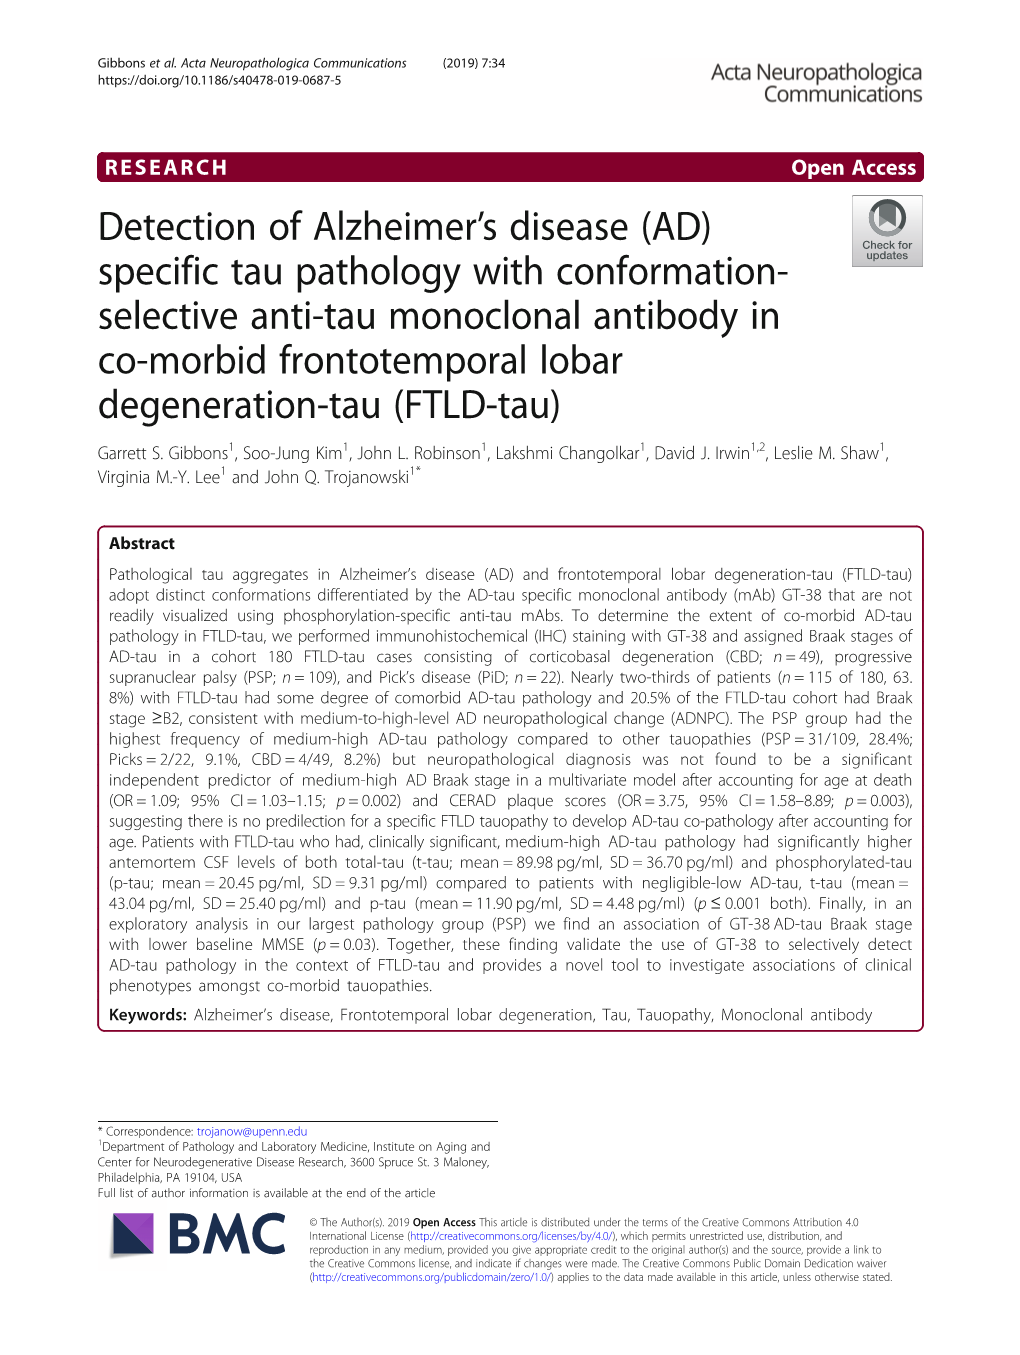 Detection of Alzheimer's Disease